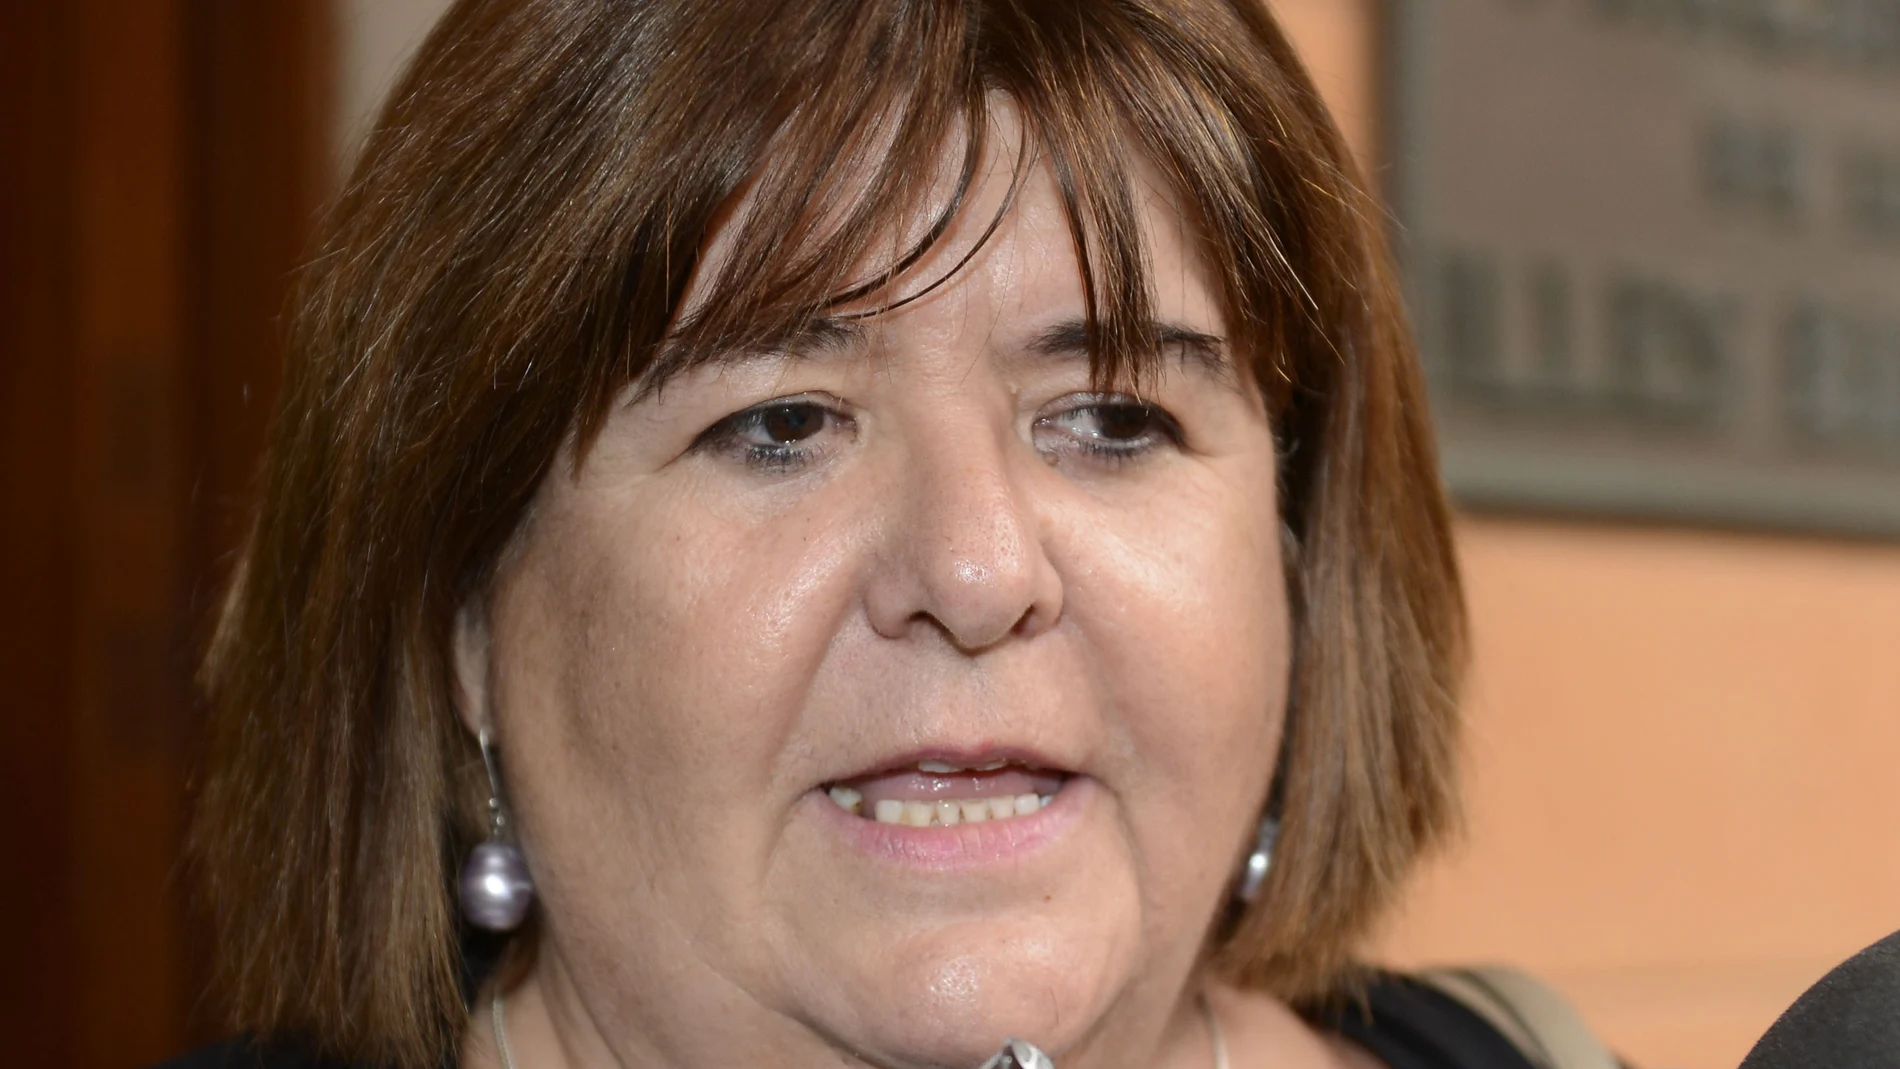 Xelo Huertas, presidenta del Parlamento balear